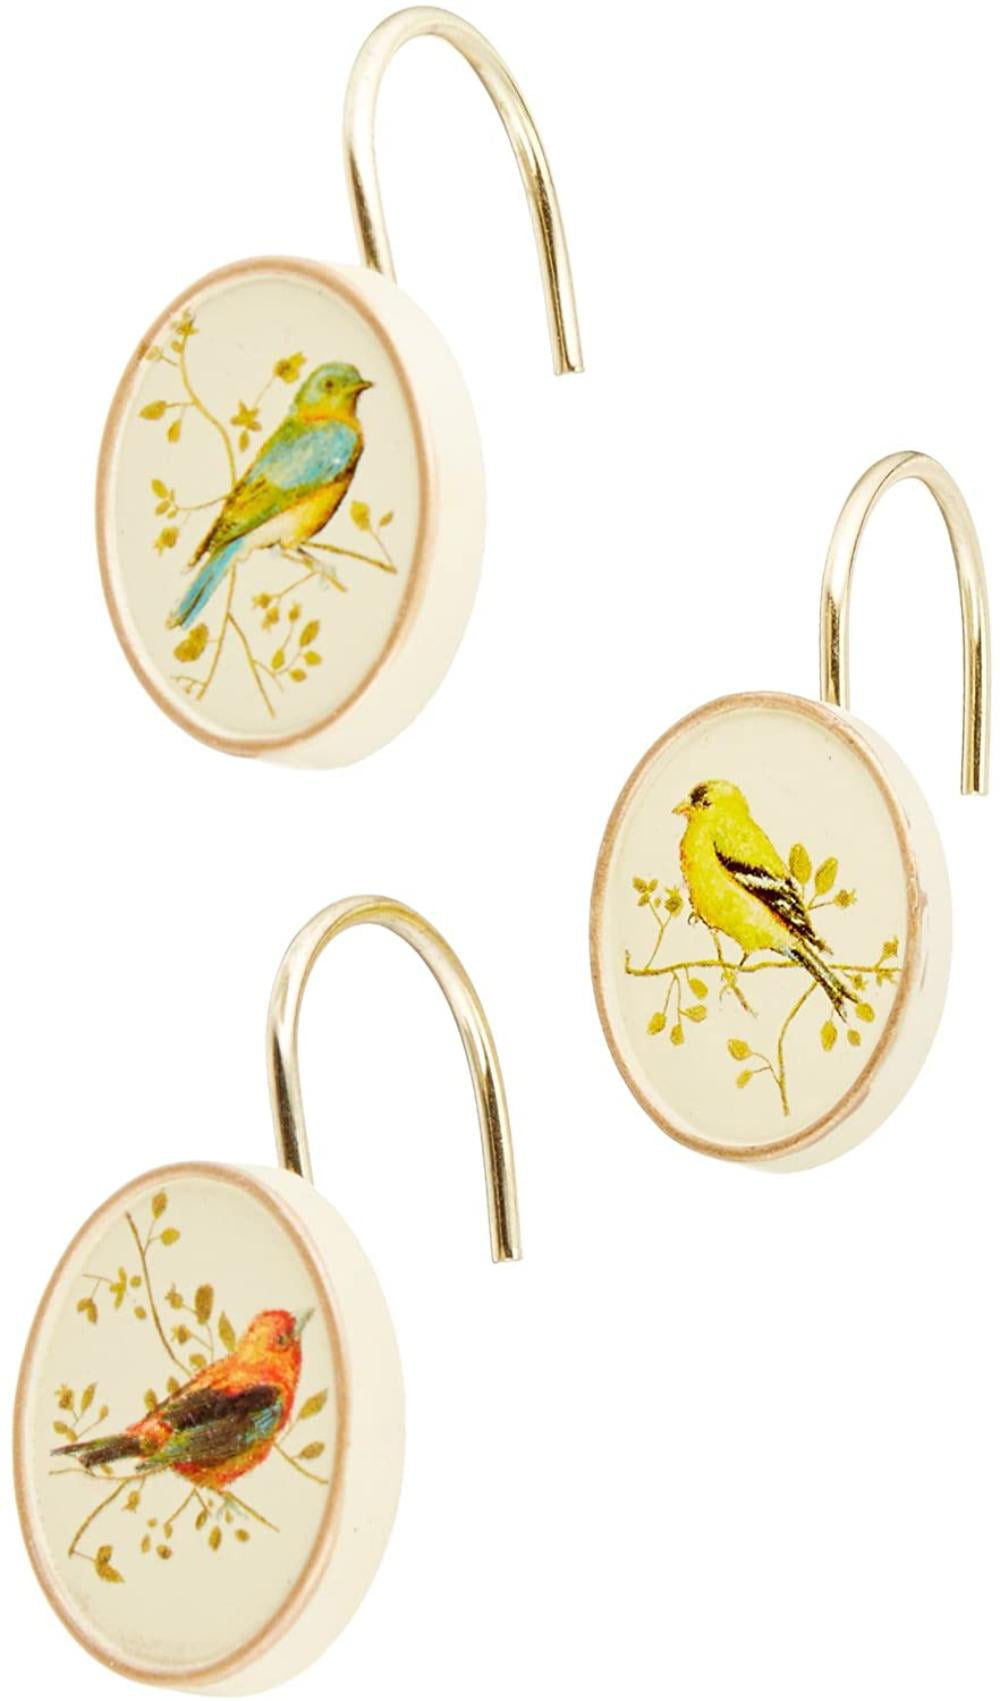 Avanti Gilded Birds Ivory Shower Curtain Rings Hooks for Bathroom Rods Set of 12 